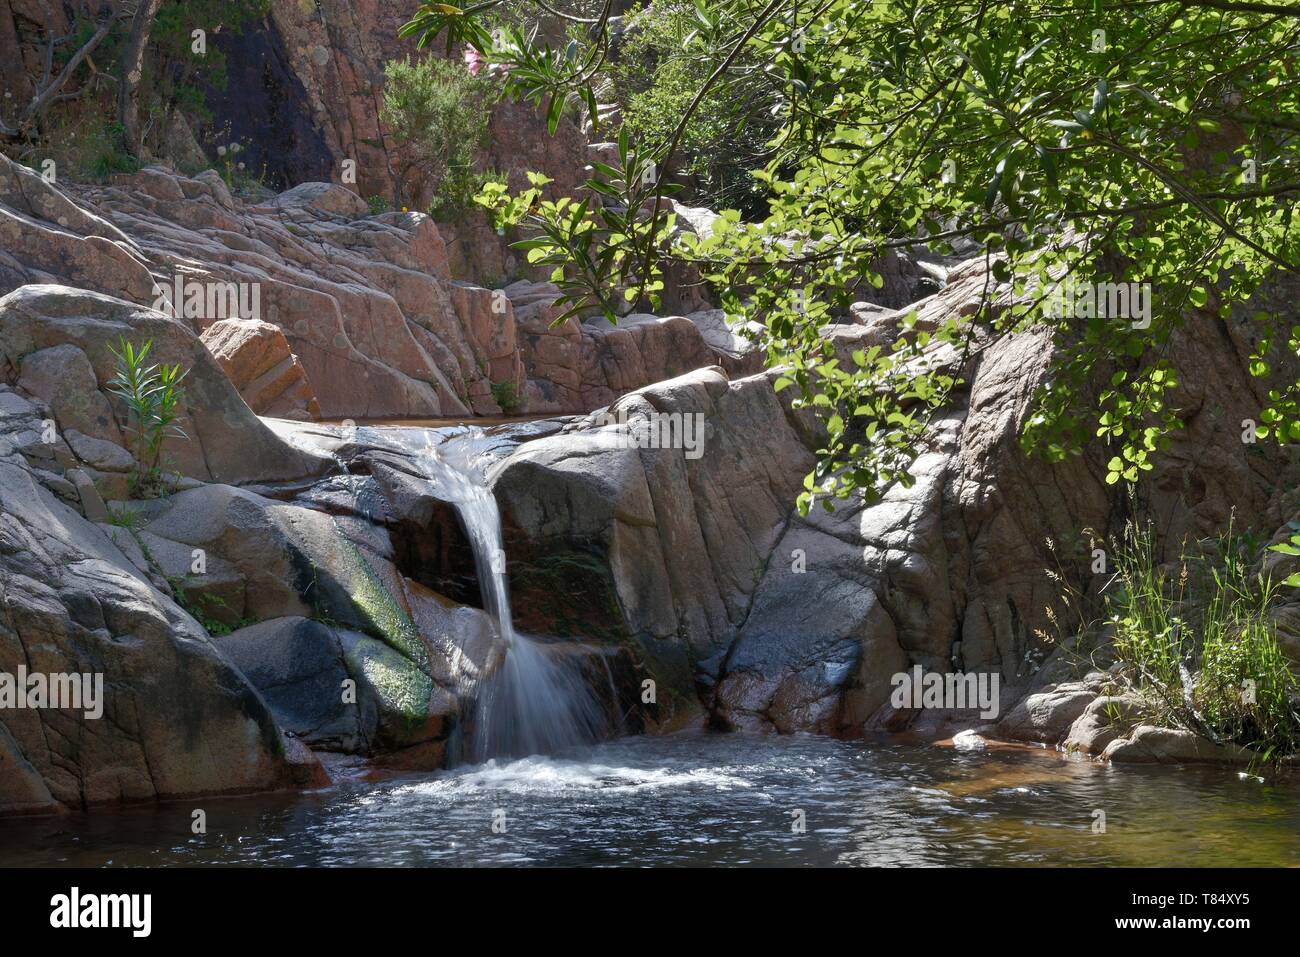 Es Piscinas piscinas y cascadas en el arroyo de la montaña, el Monte Ferru, Coccorrocci, Ogliastra, Cerdeña, junio de 2018. Foto de stock